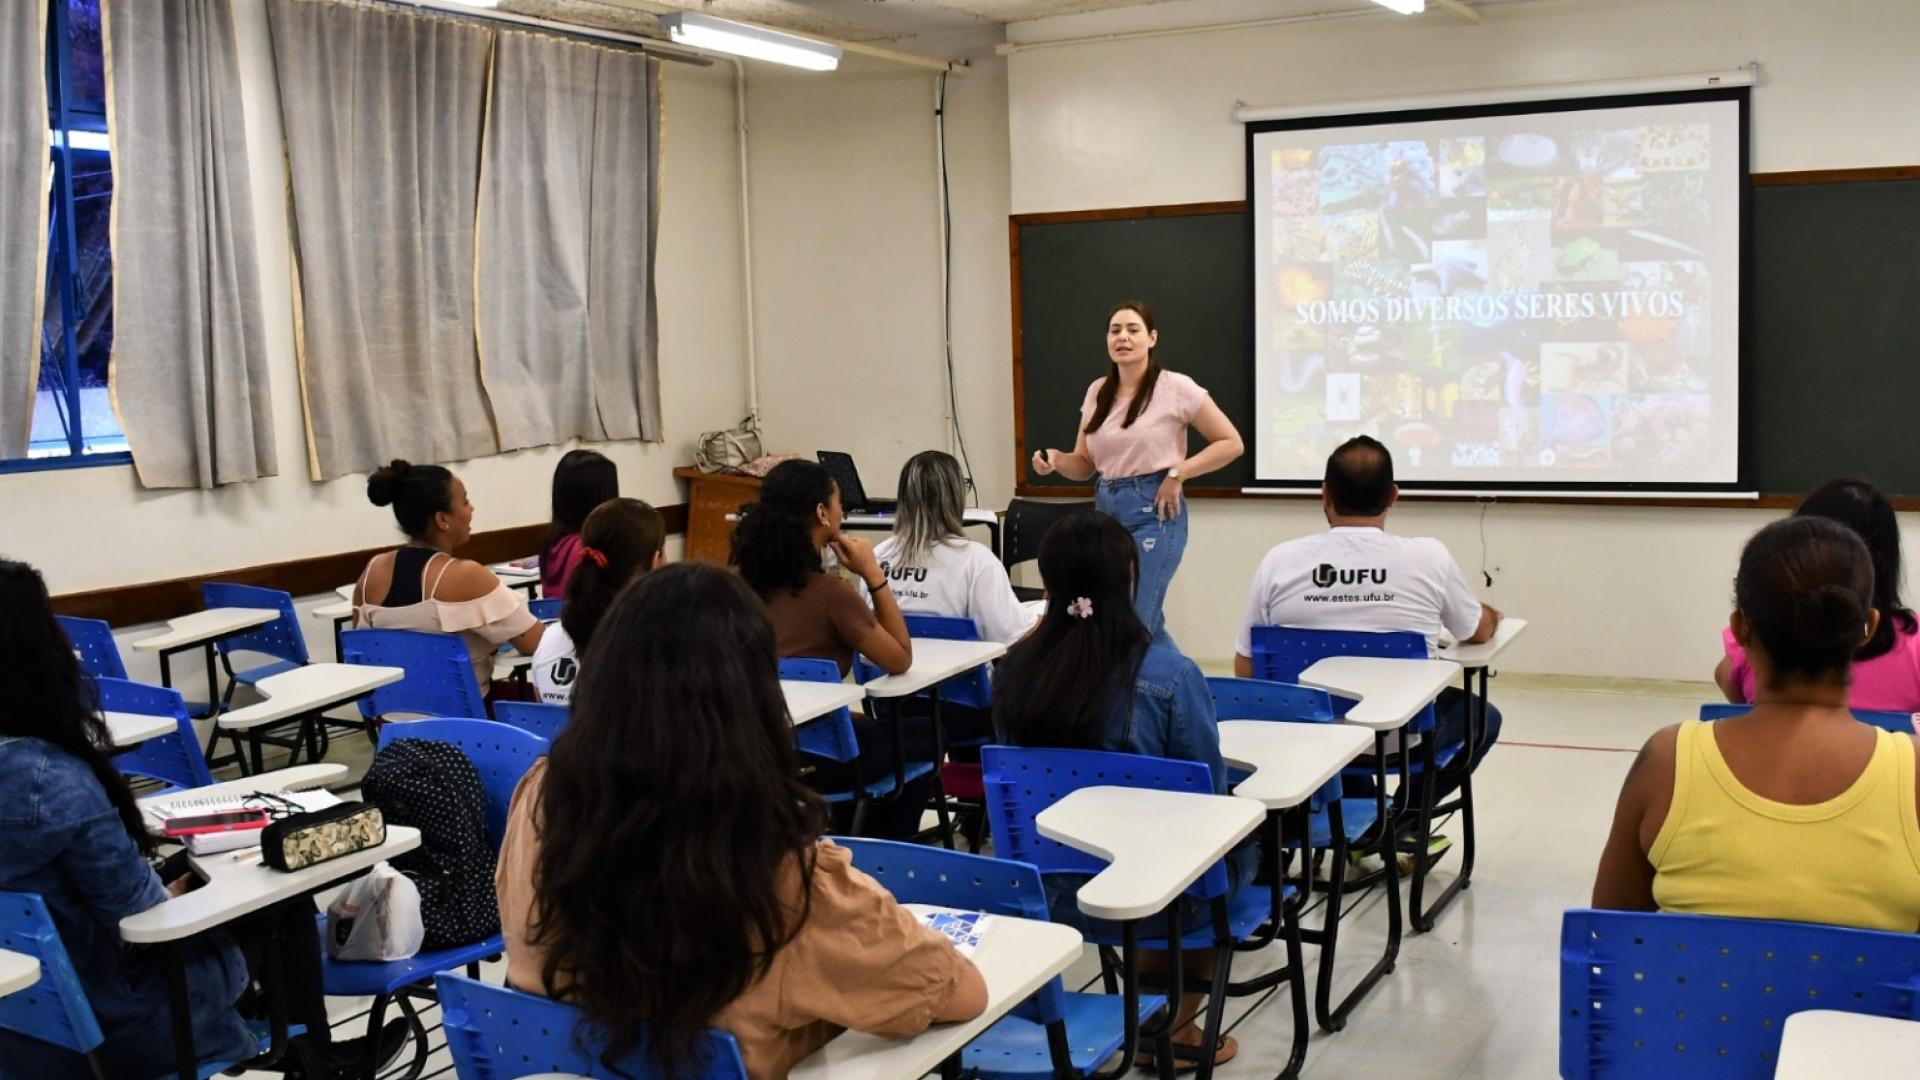 Imagem de uma professora em pé, ministrando aula, diante de um grupo de alunos de costas, sentados em suas carteiras numa sala da Escola Técnica de Saúde da UFU